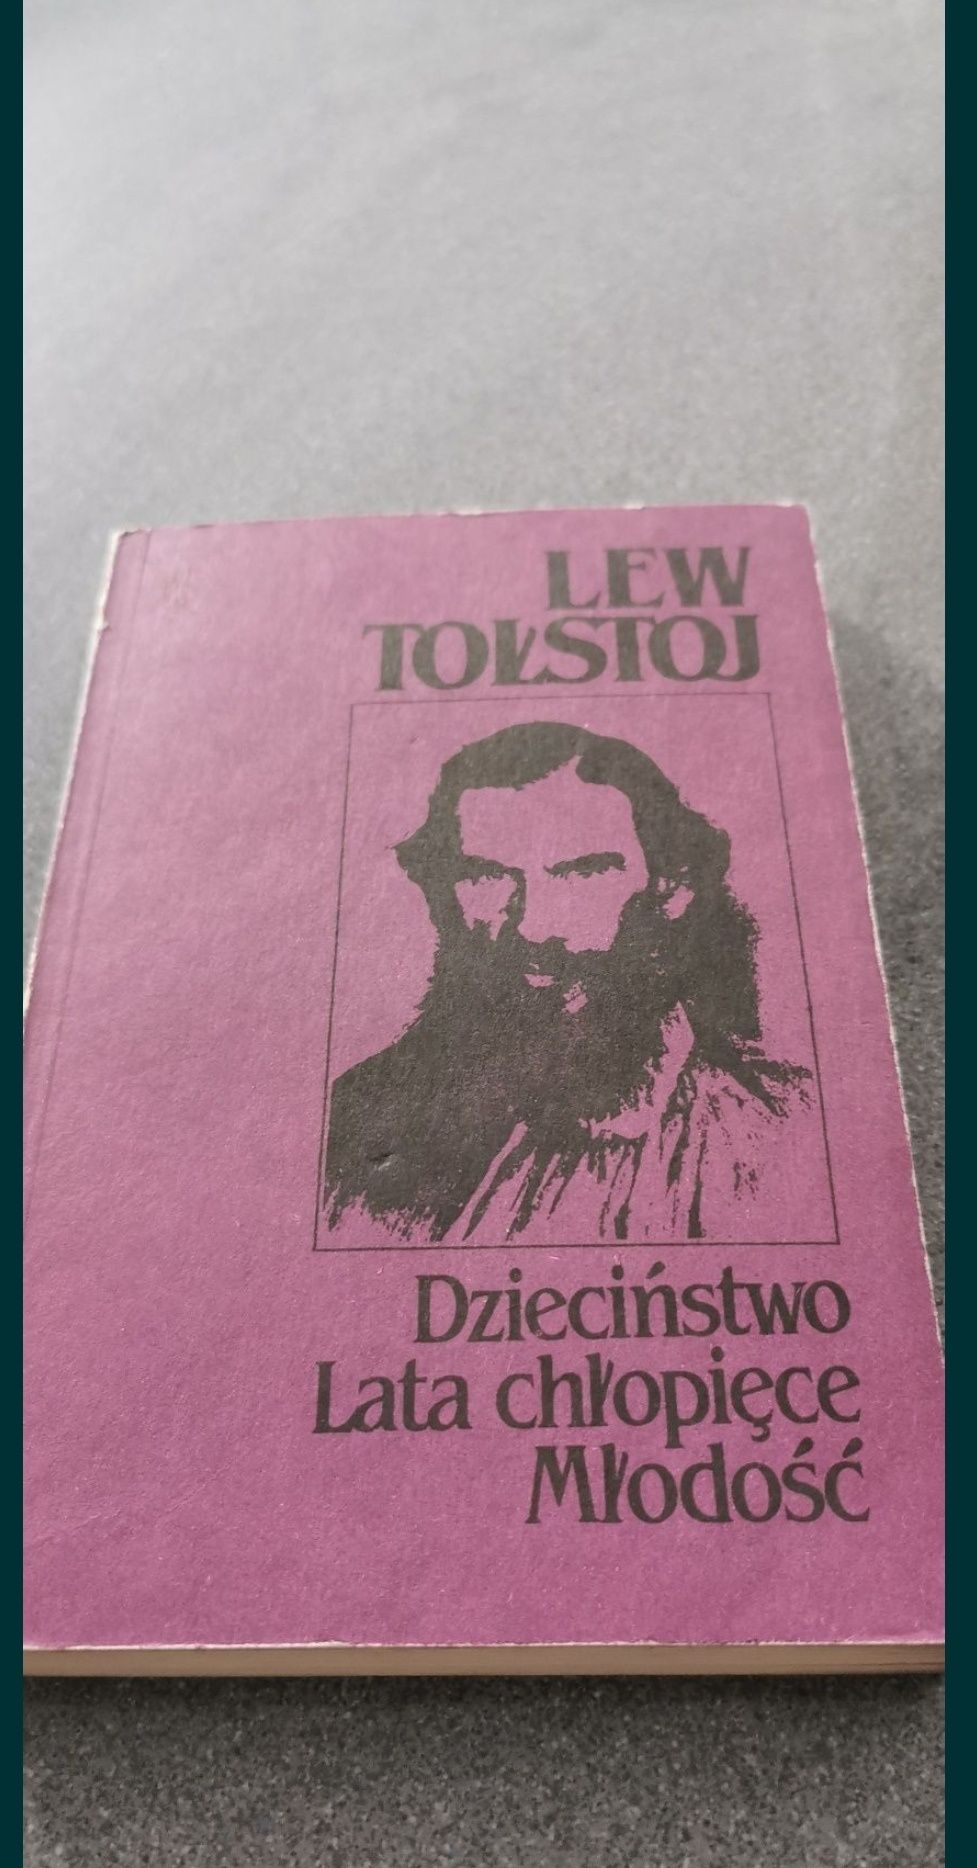 Lew Tołstoj
Biografia Dzieciństwo lata chłopięce